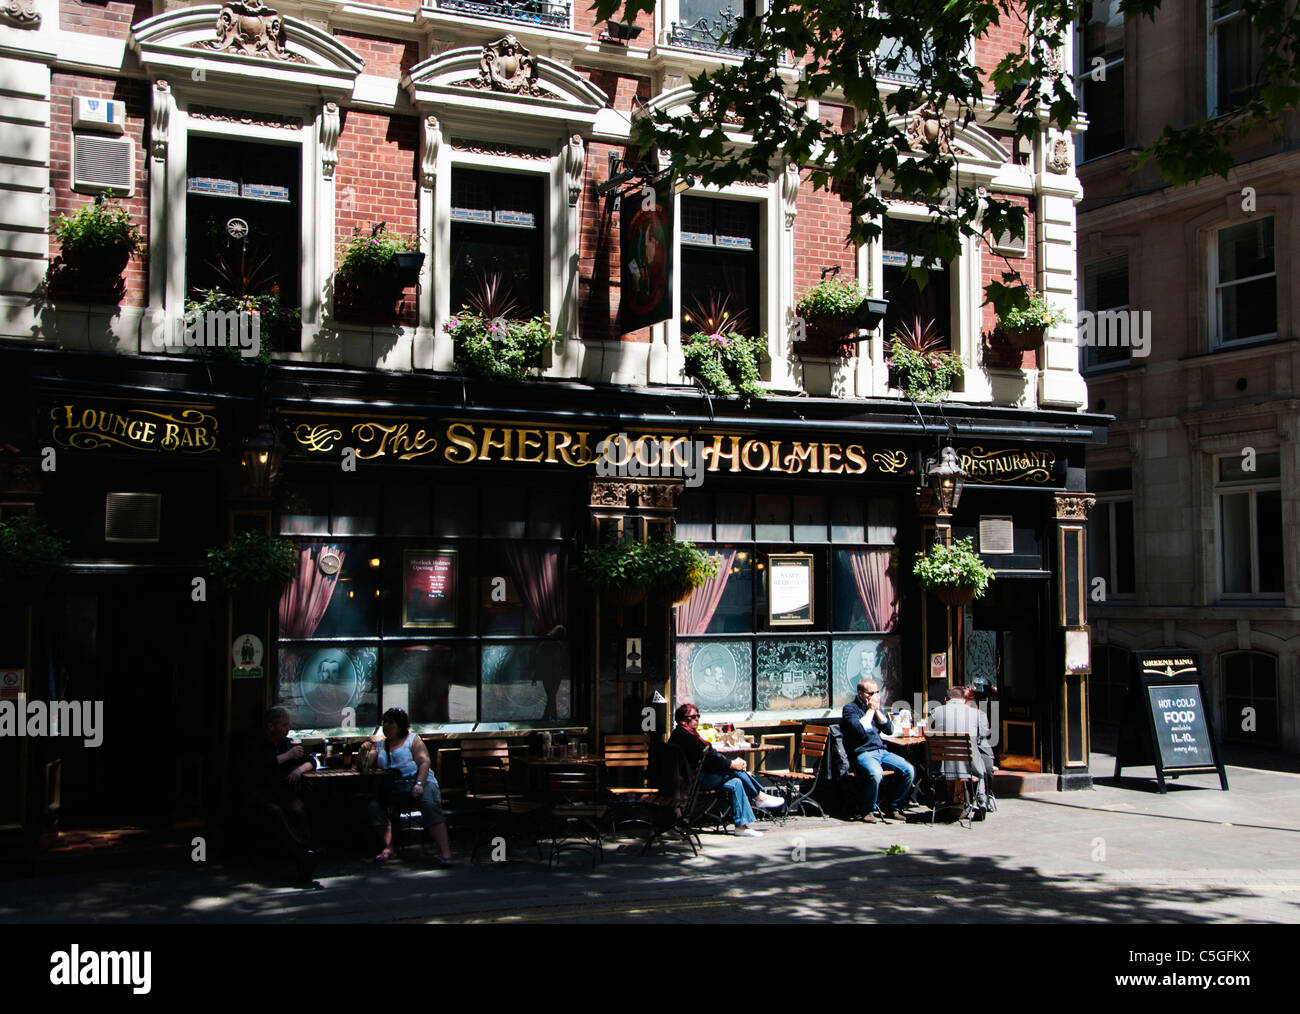 Le Sherlock Holmes, pub et restaurant, London, UK Banque D'Images